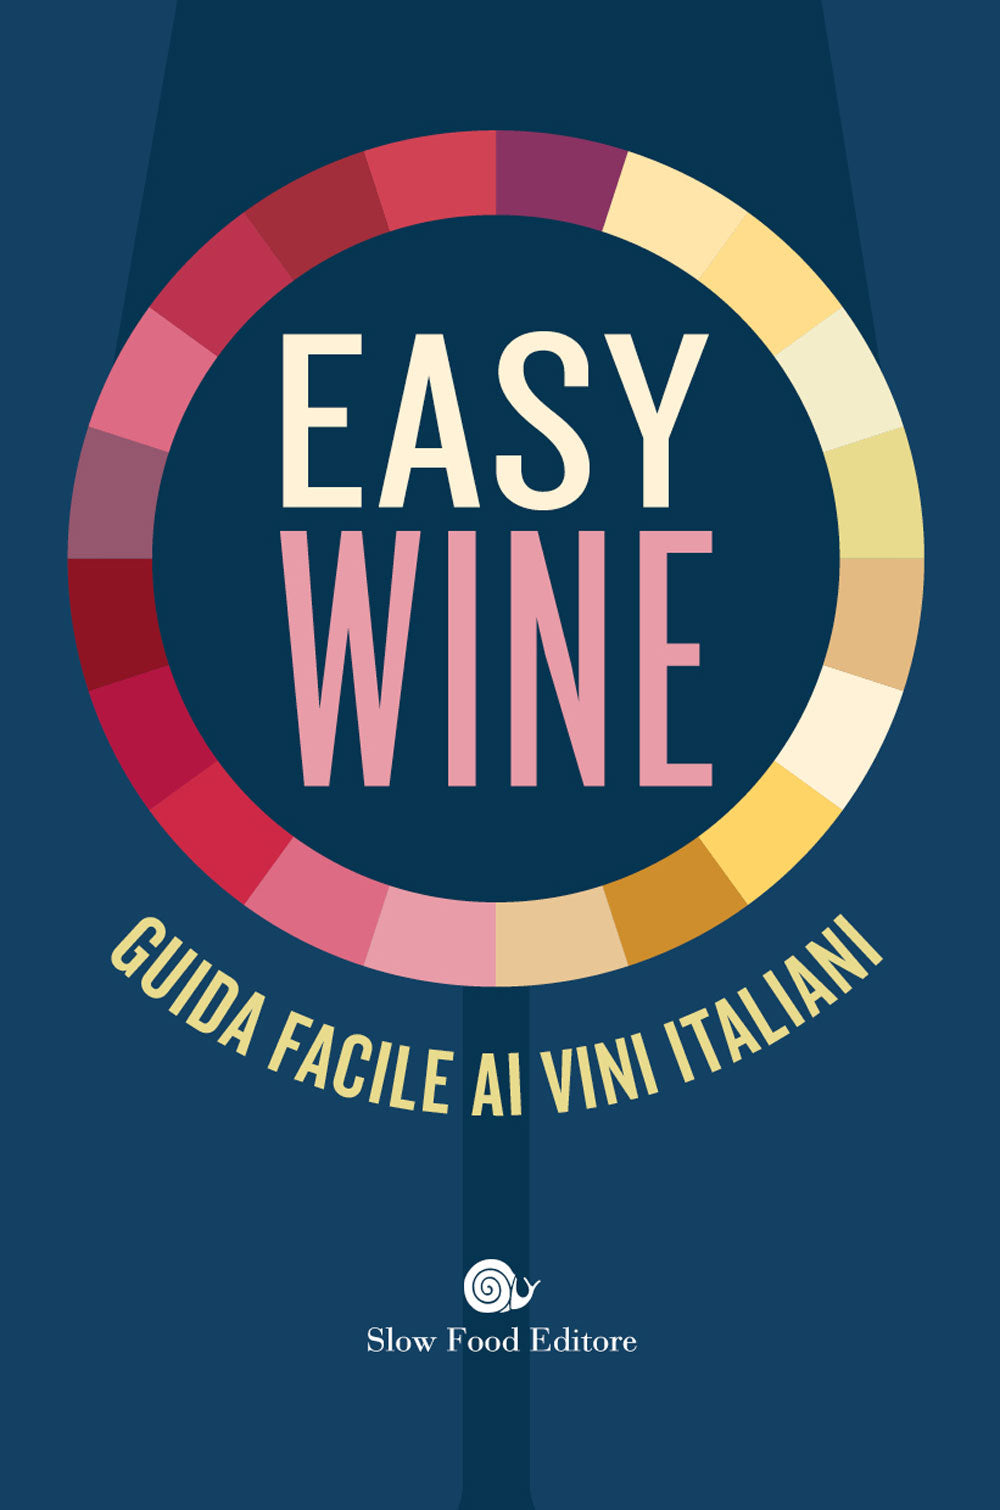 Easy wine::Guida facile ai vini italiani